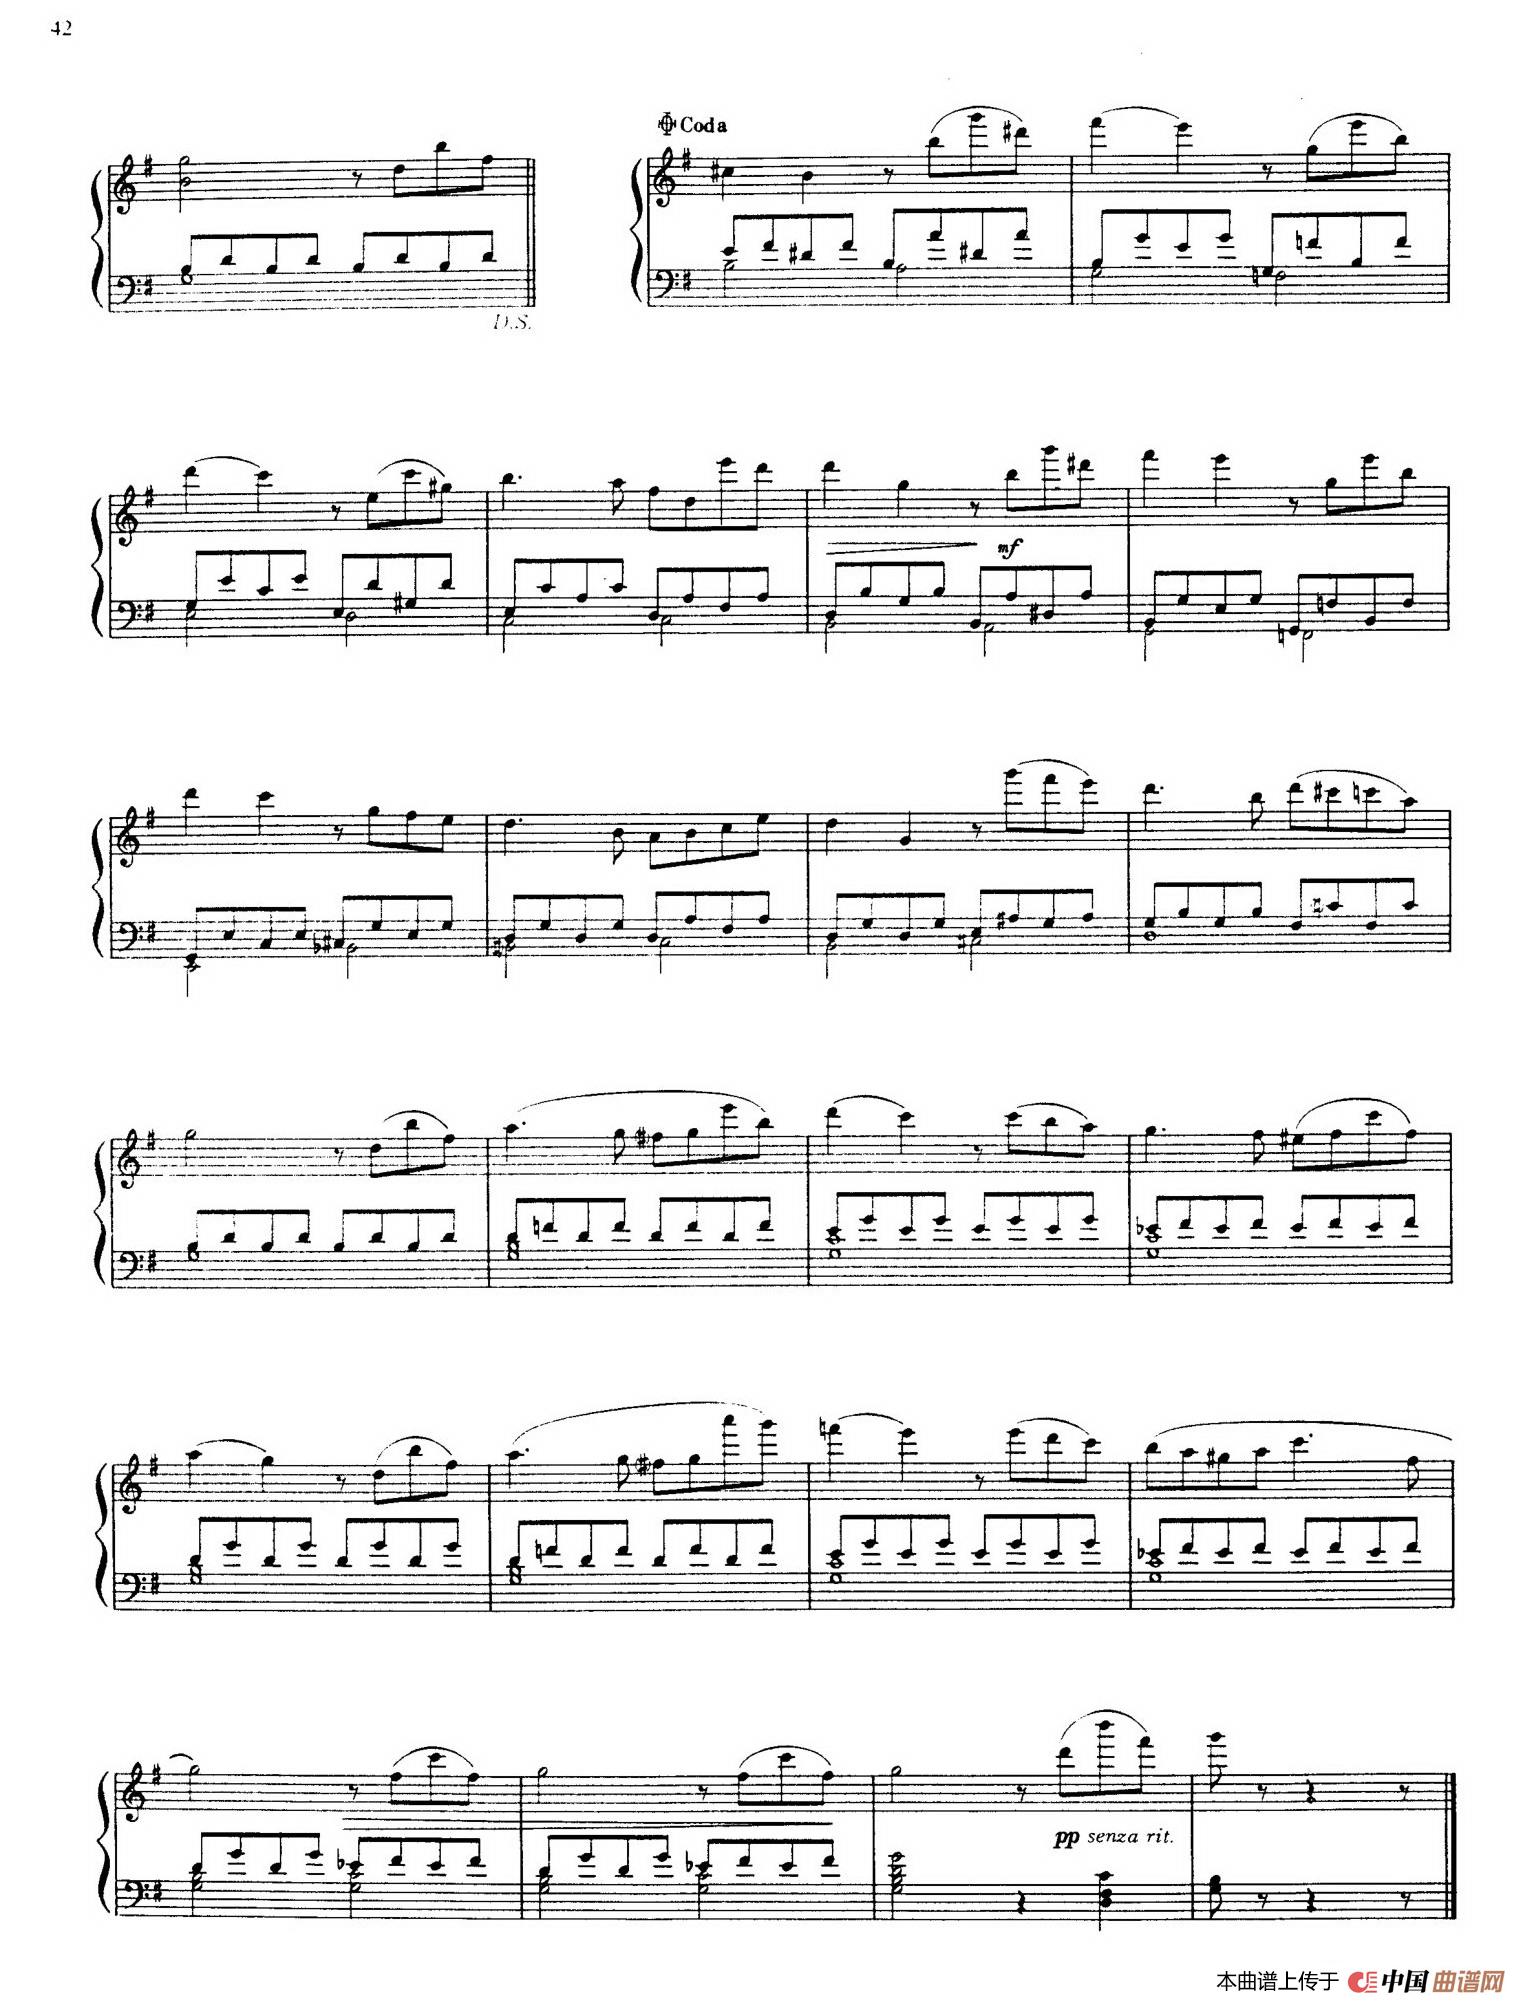 《Sonatina in G Major》钢琴曲谱图分享